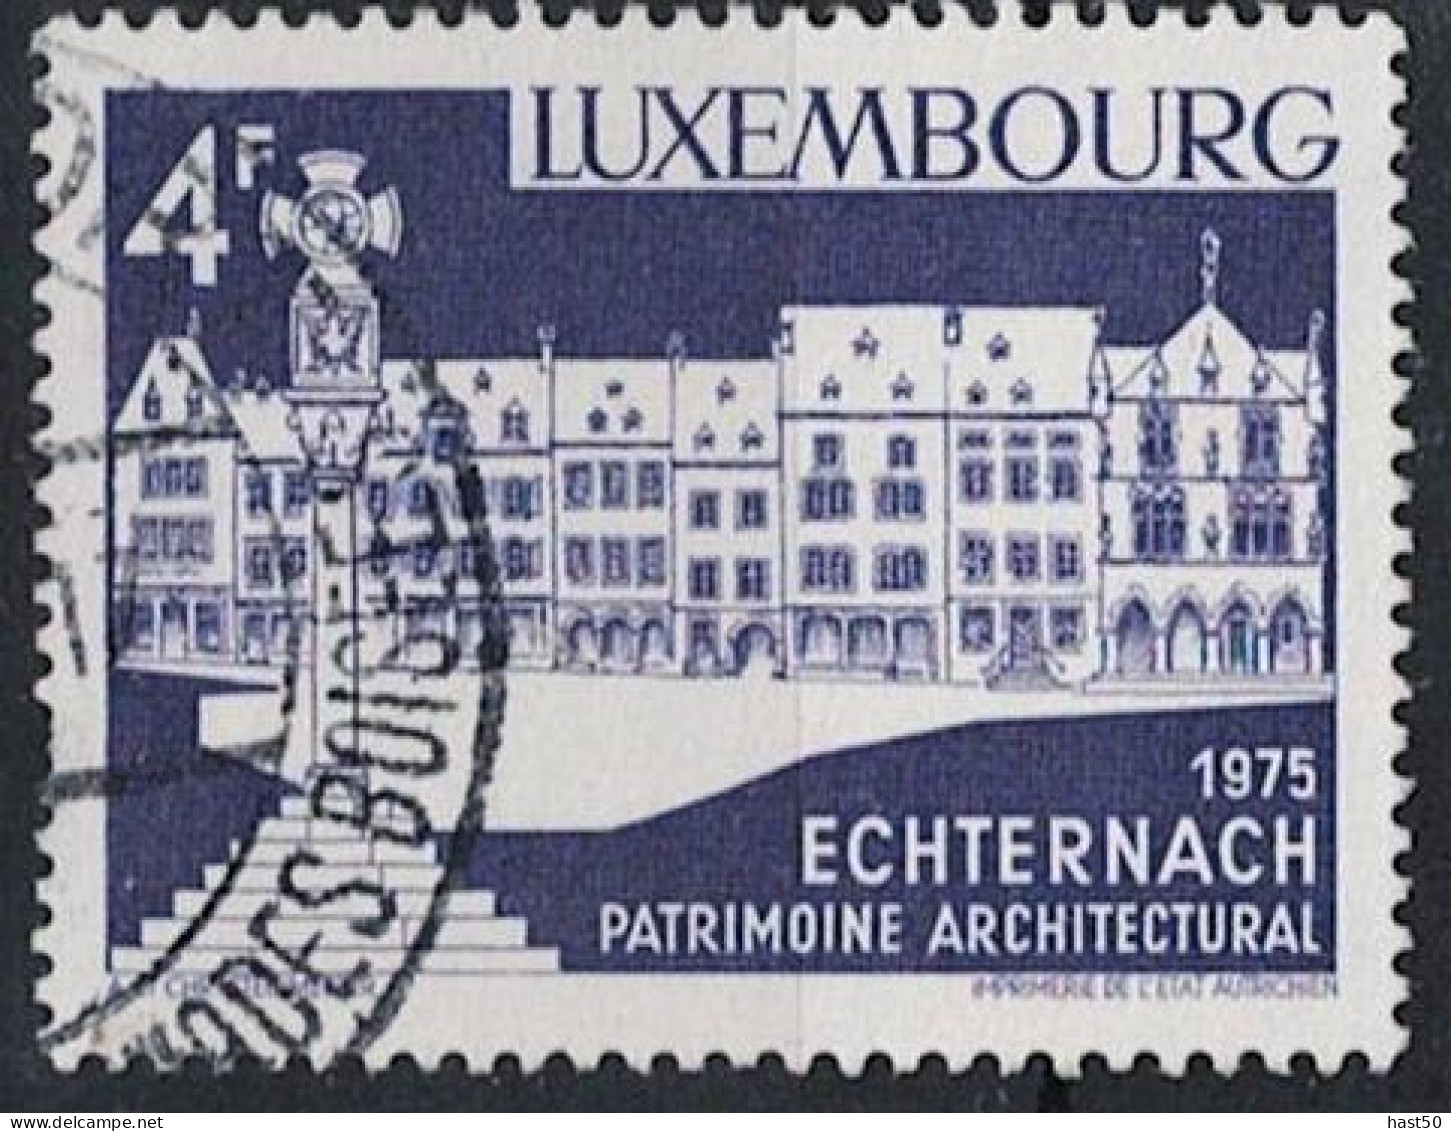 Luxemburg - Echternach, Marktplatz (MiNr: 902) 1975 - Gest Used Obl - Used Stamps